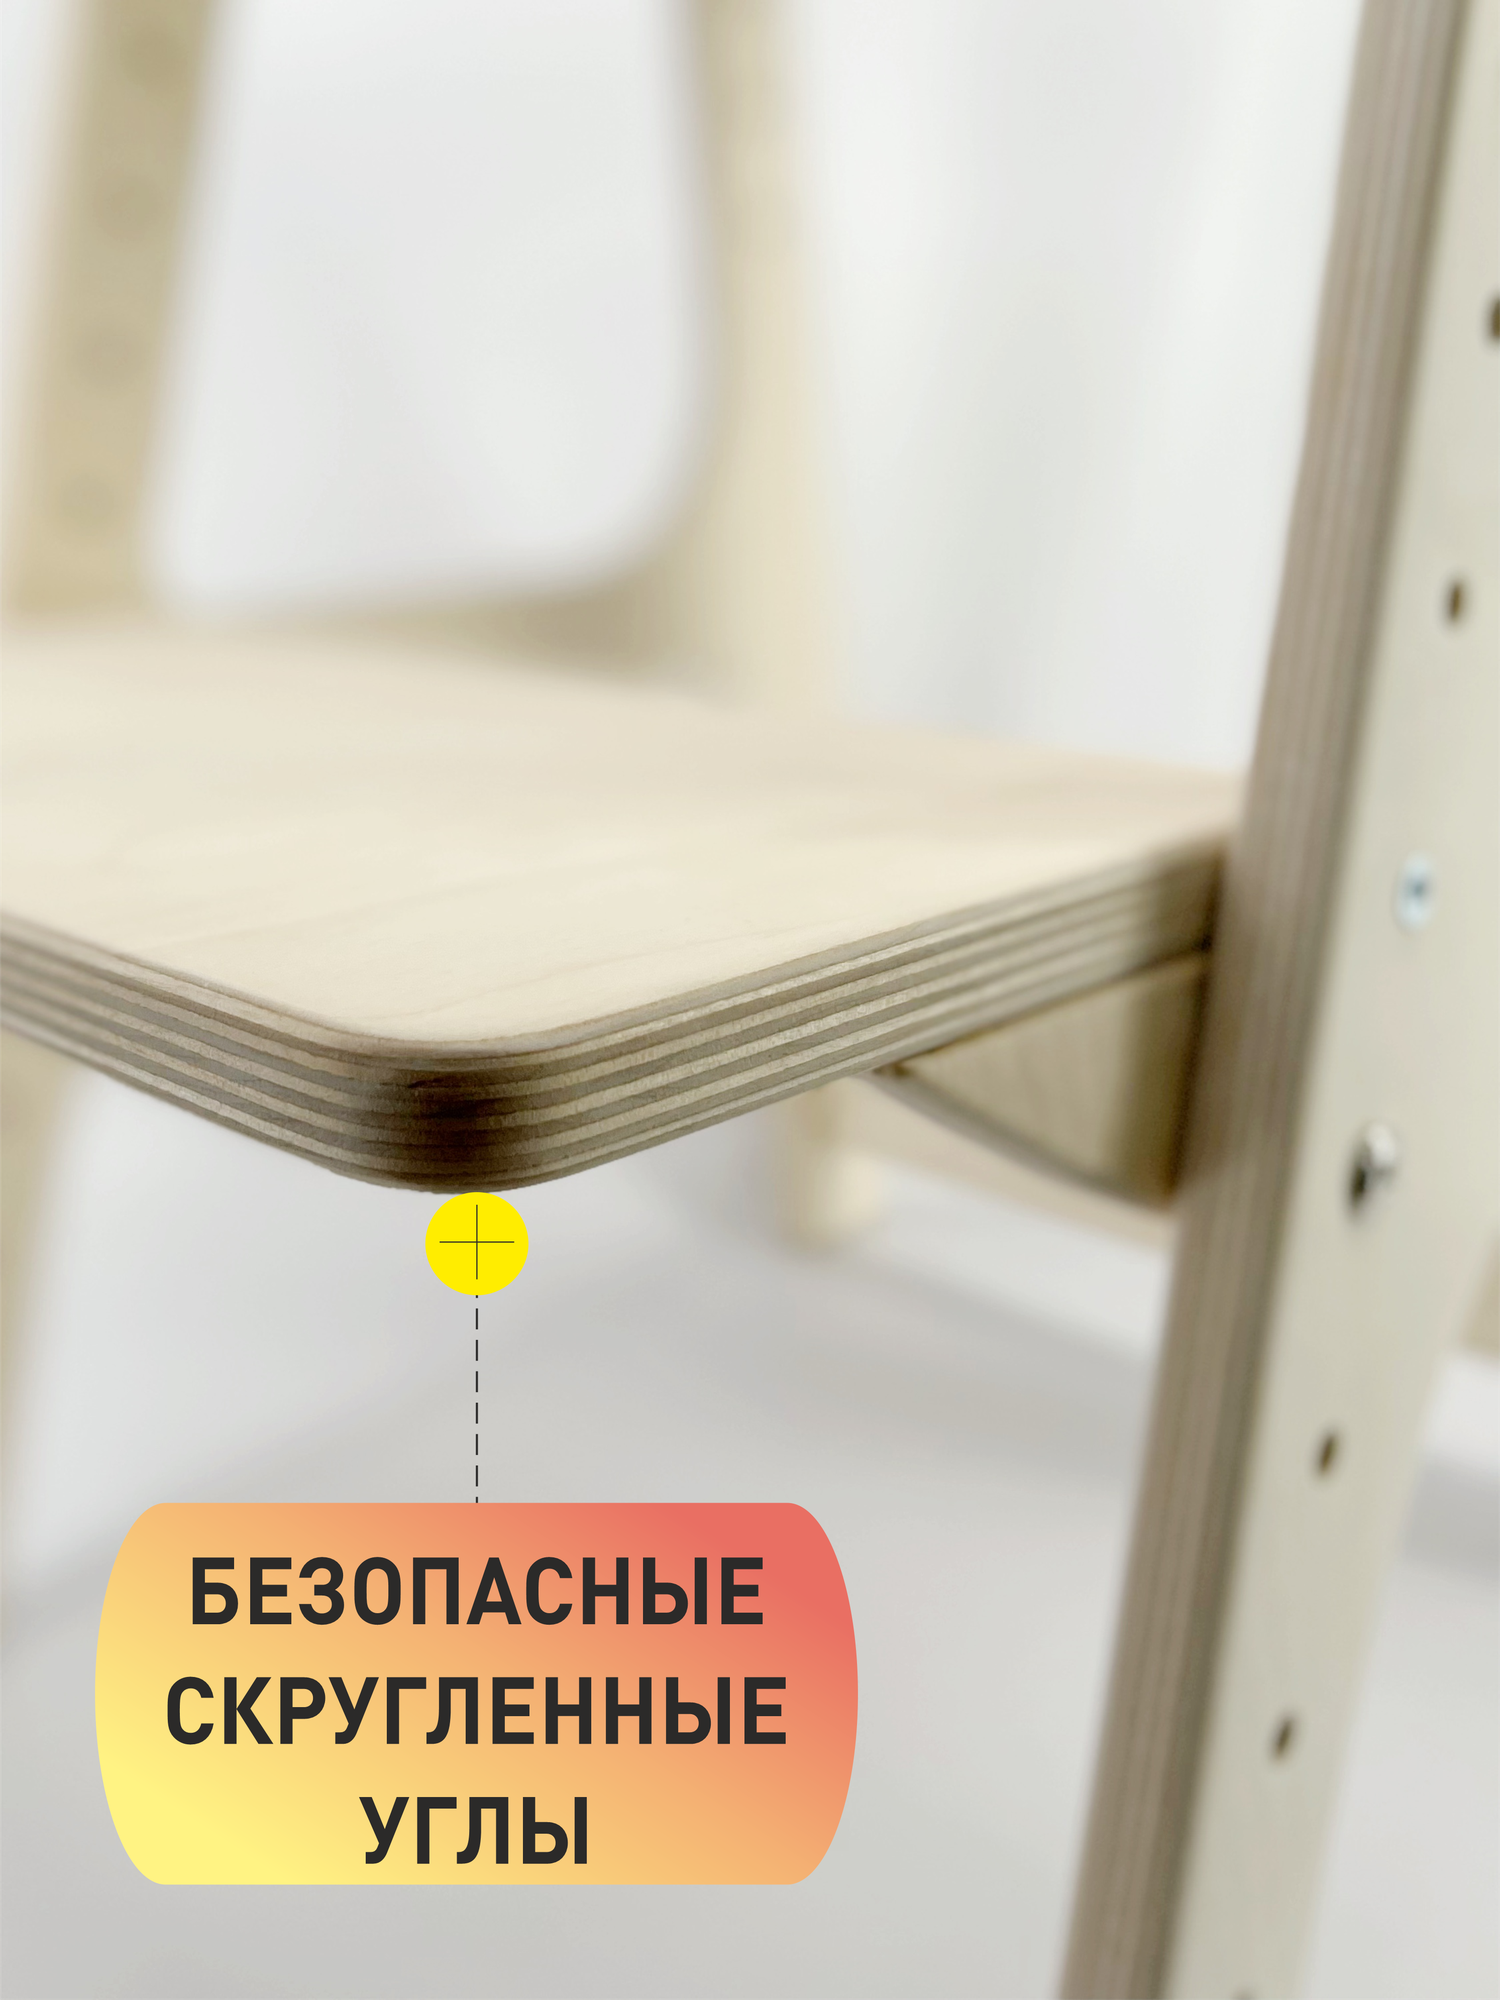 Растущий стул для детей FORLIKE с подлокотниками без покраски, шлифованный